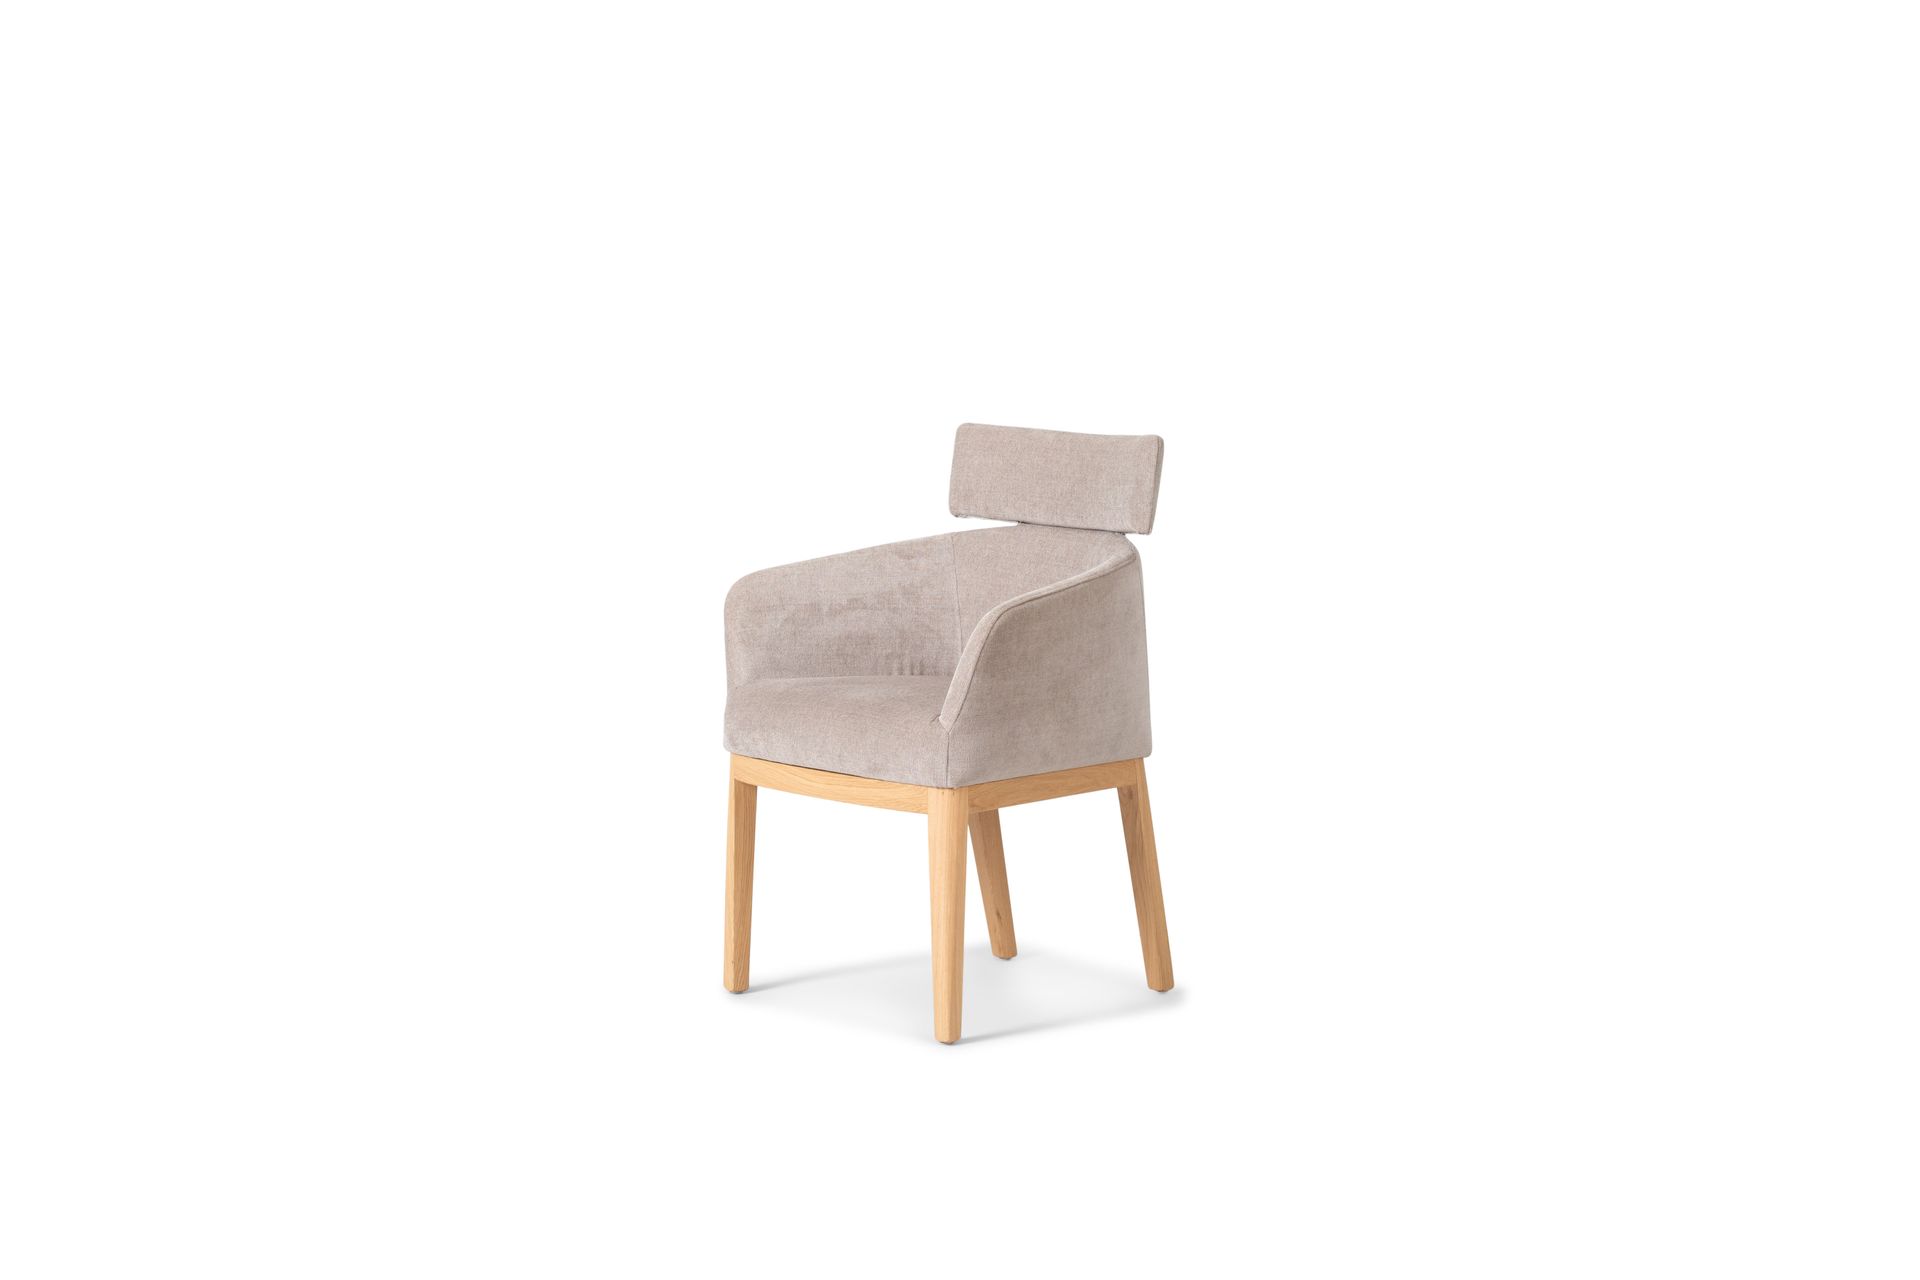 Cenare Stijlvol design met zachte details en ronde vormen. Deze eetkamerstoel maakt jouw dinerervaring helemaal af. Geniet van een avond lekker lang natafelen in deze comfortabele stoelen.